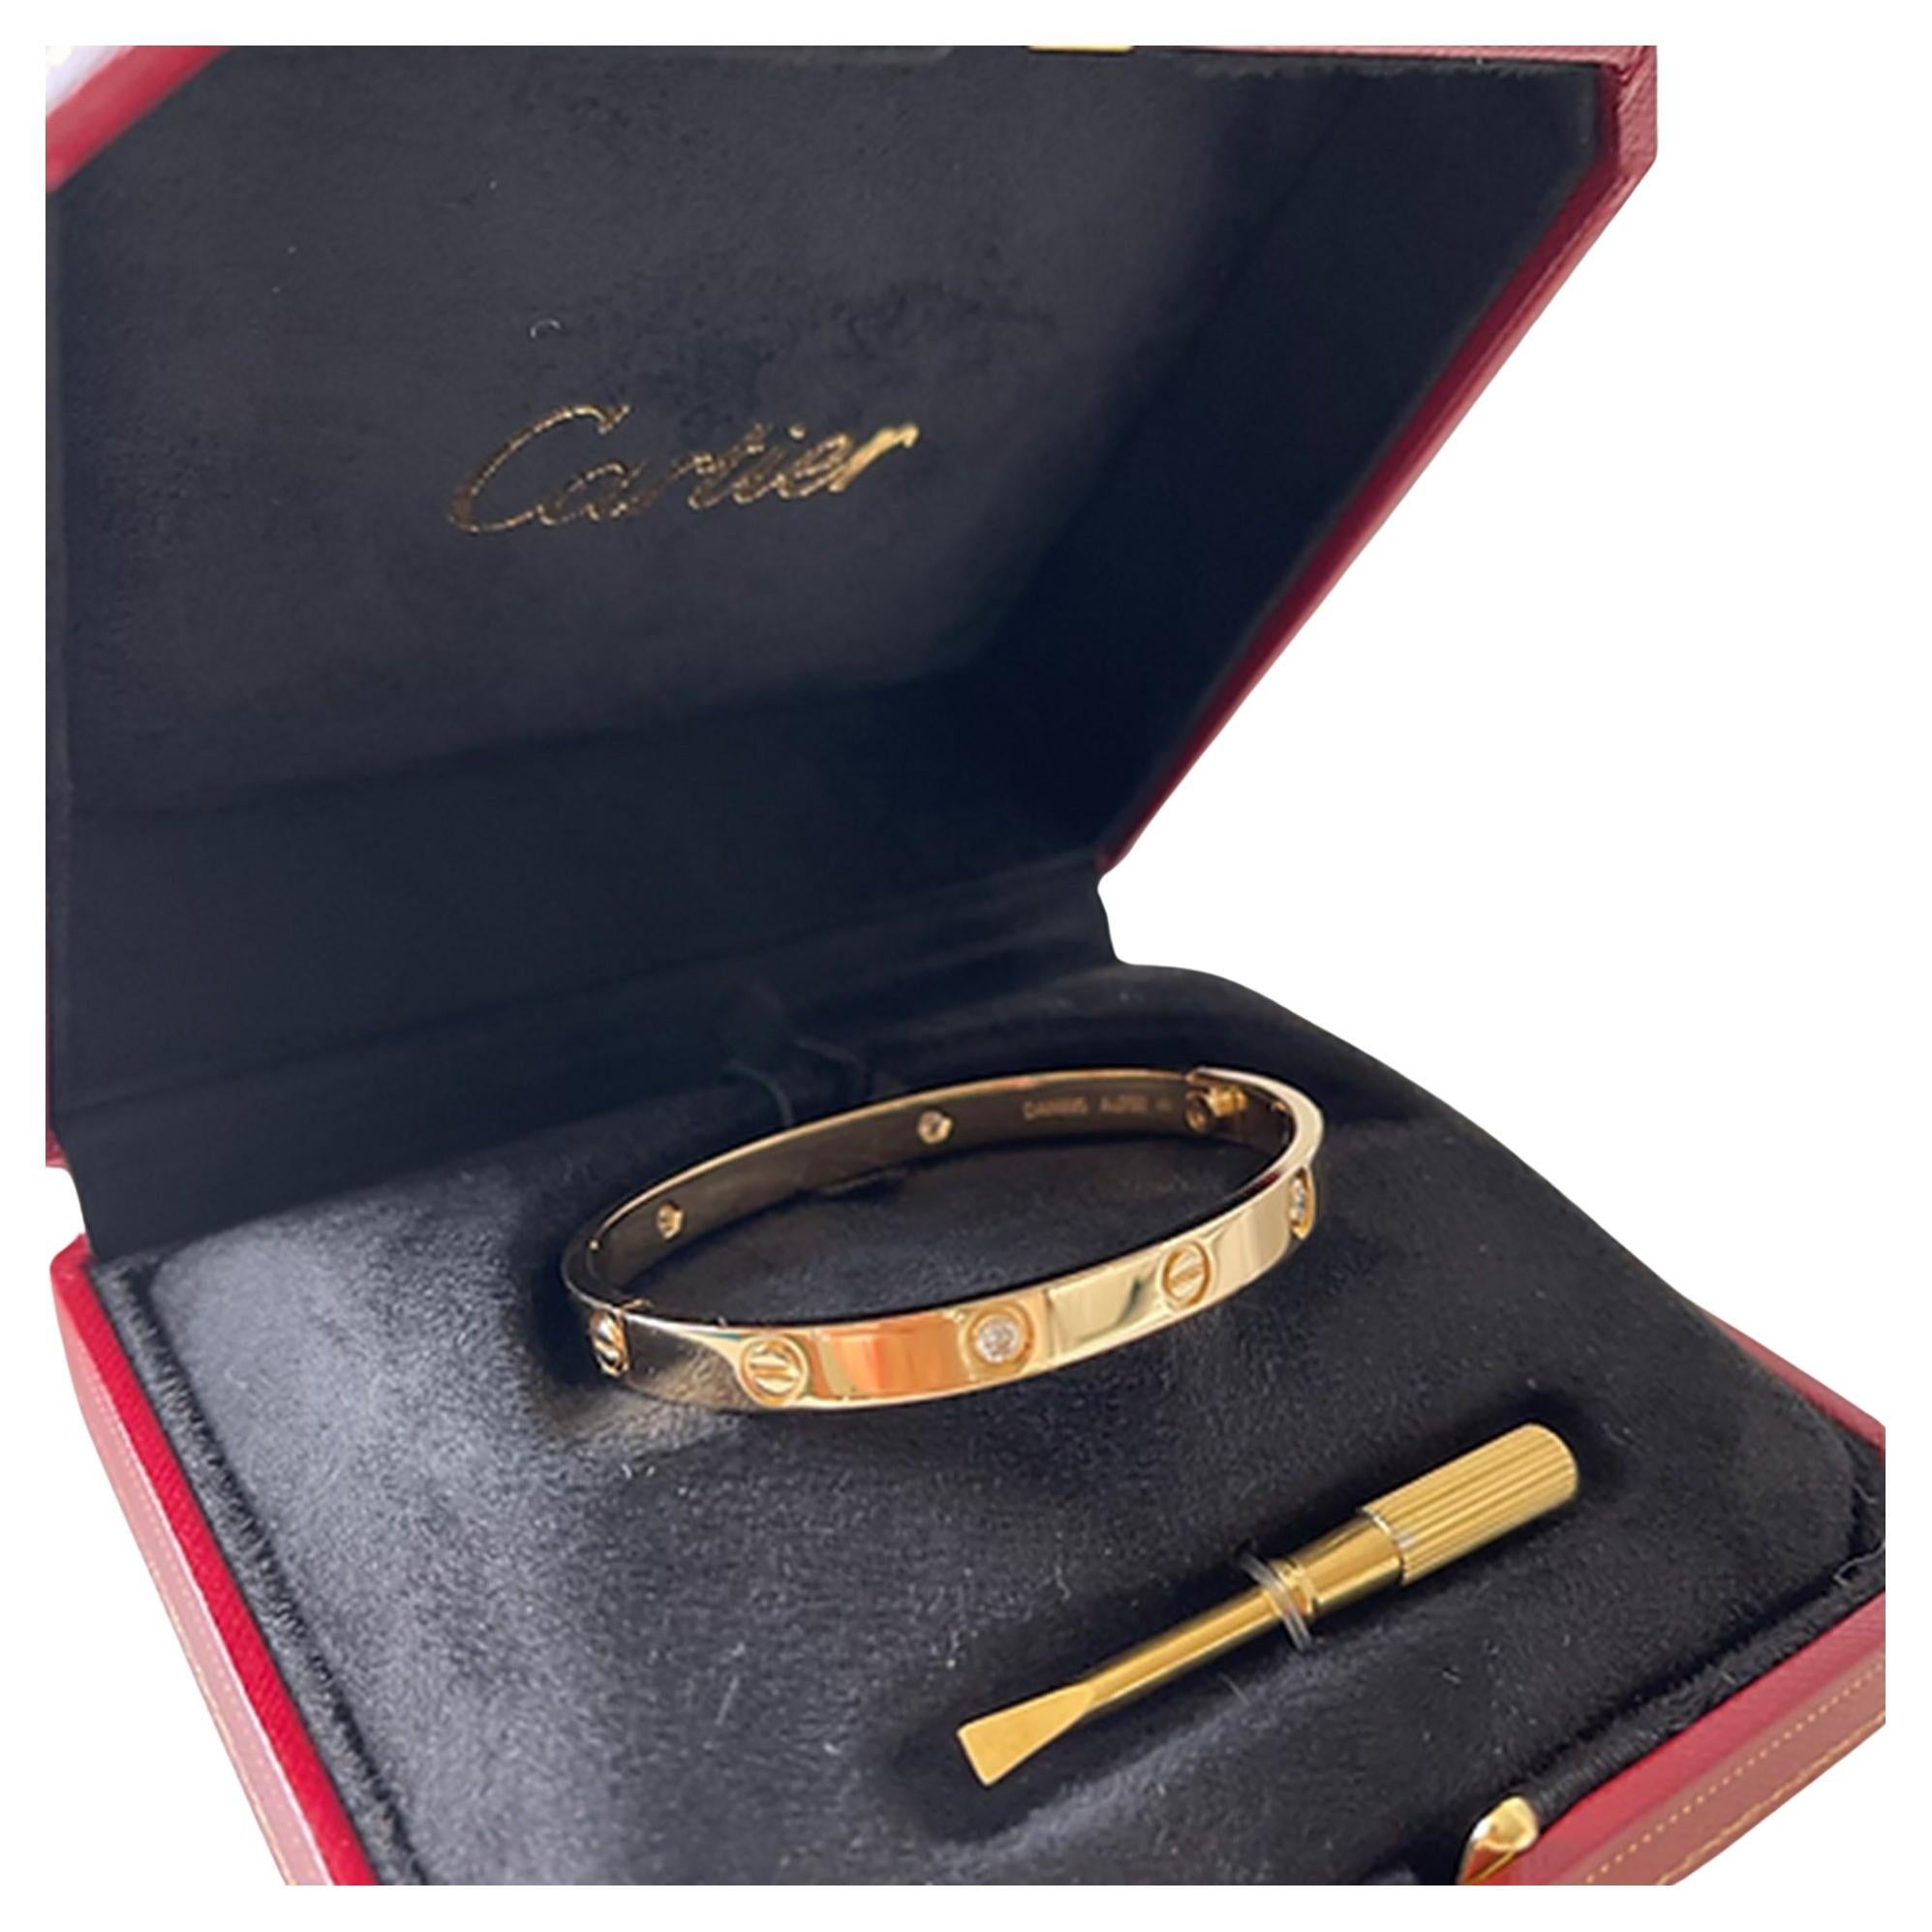 Das 1969 in New York gefertigte Armband LOVE ist eine Ikone des Schmucks. Es besteht aus Gelbgold mit einem Feingehalt von 750/1000 und ist mit vier Diamanten im Brillantschliff von insgesamt 0,42 Karat besetzt. Das Armband mit einer Breite von 6,1